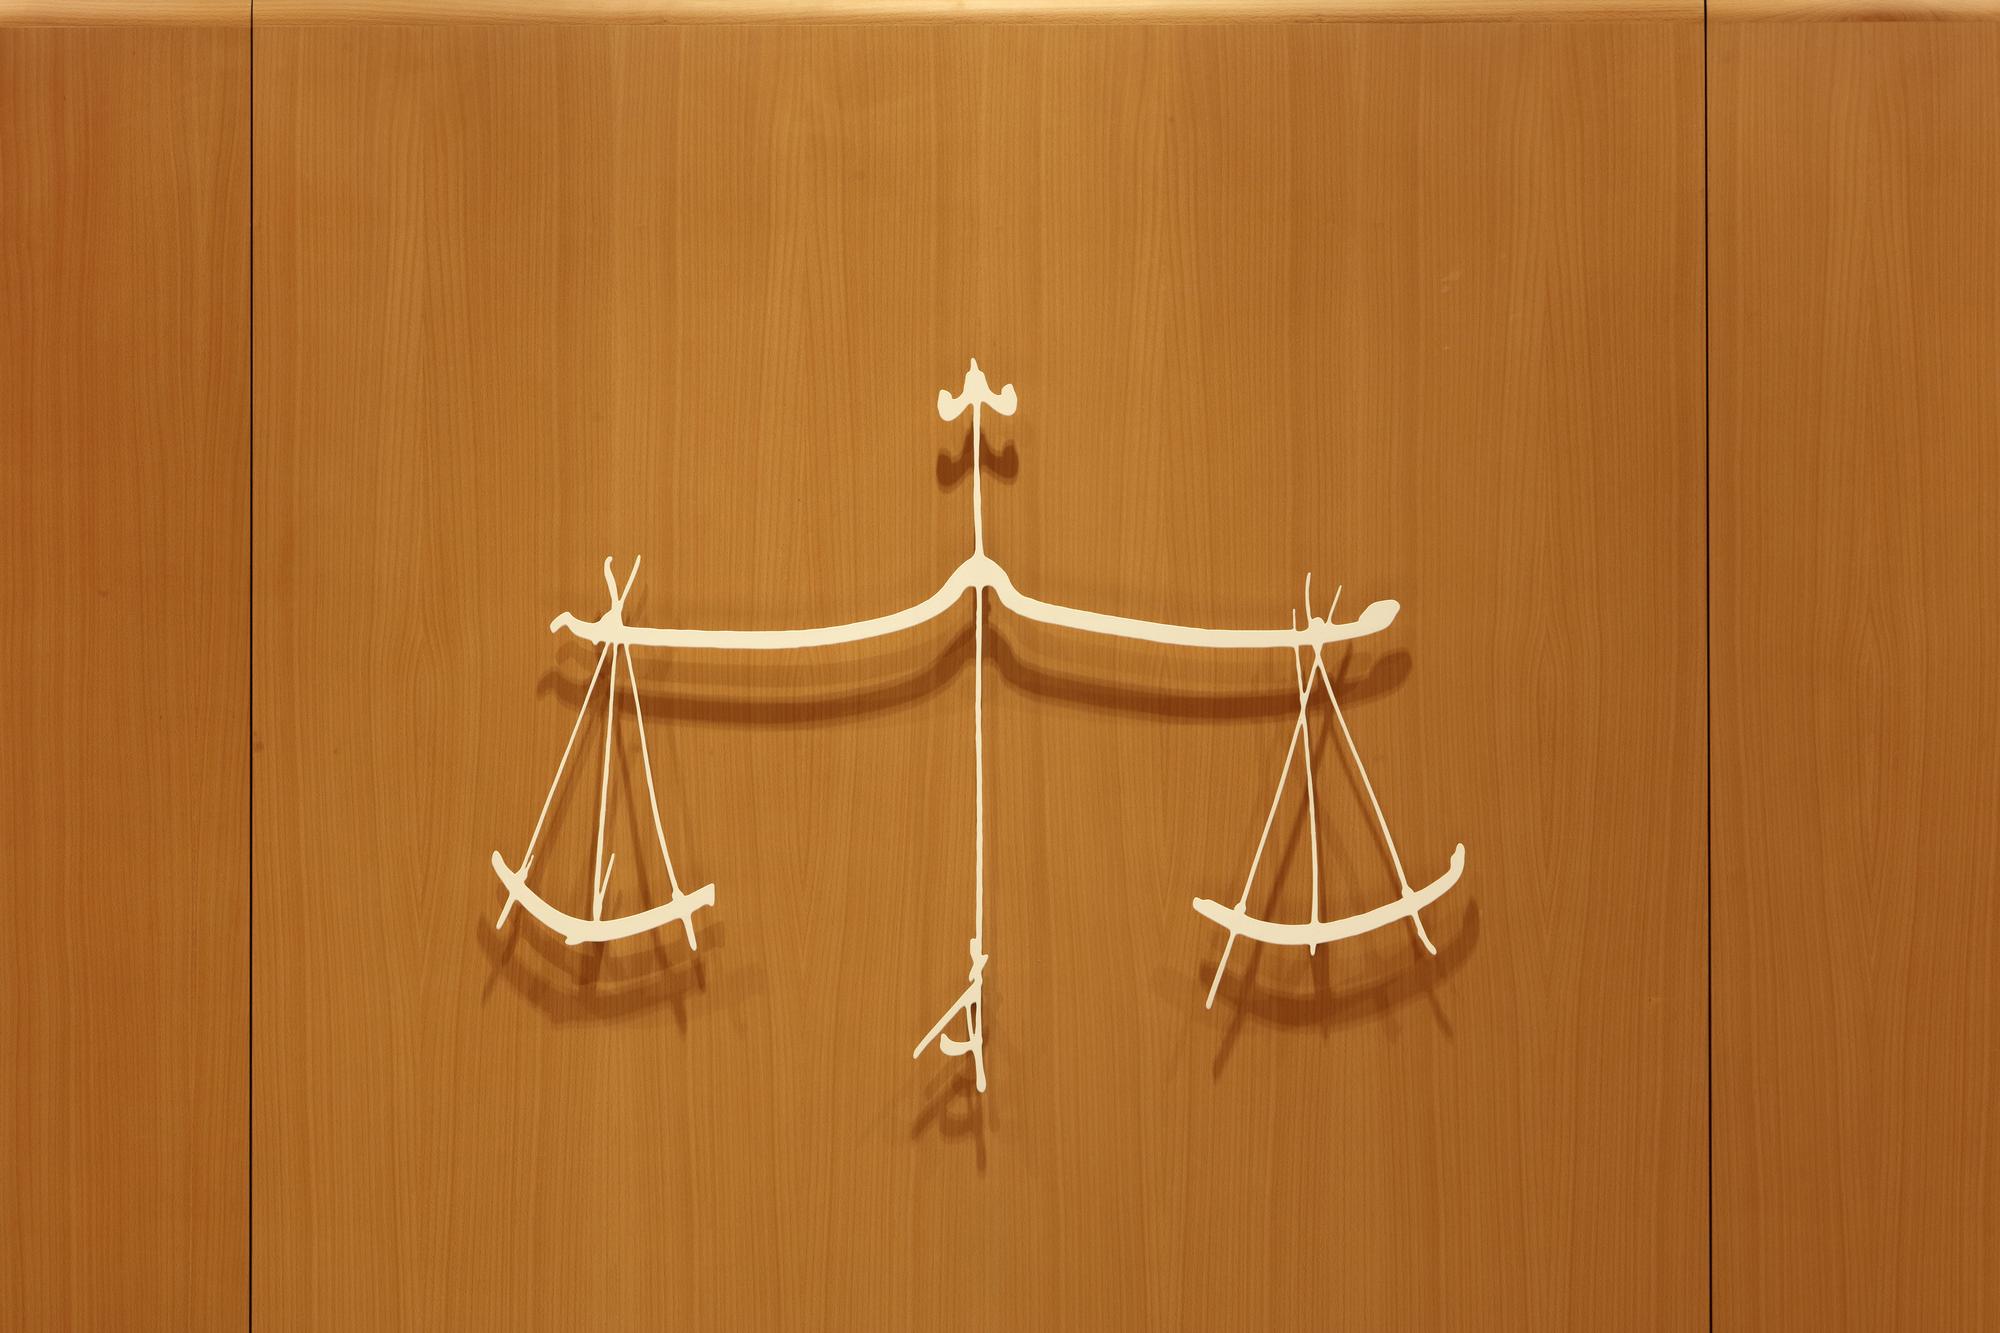 La balance de la Justice sur la porte de la salle Victor Hugo du Tribunal de Paris. [AFP - Manuel Cohen]